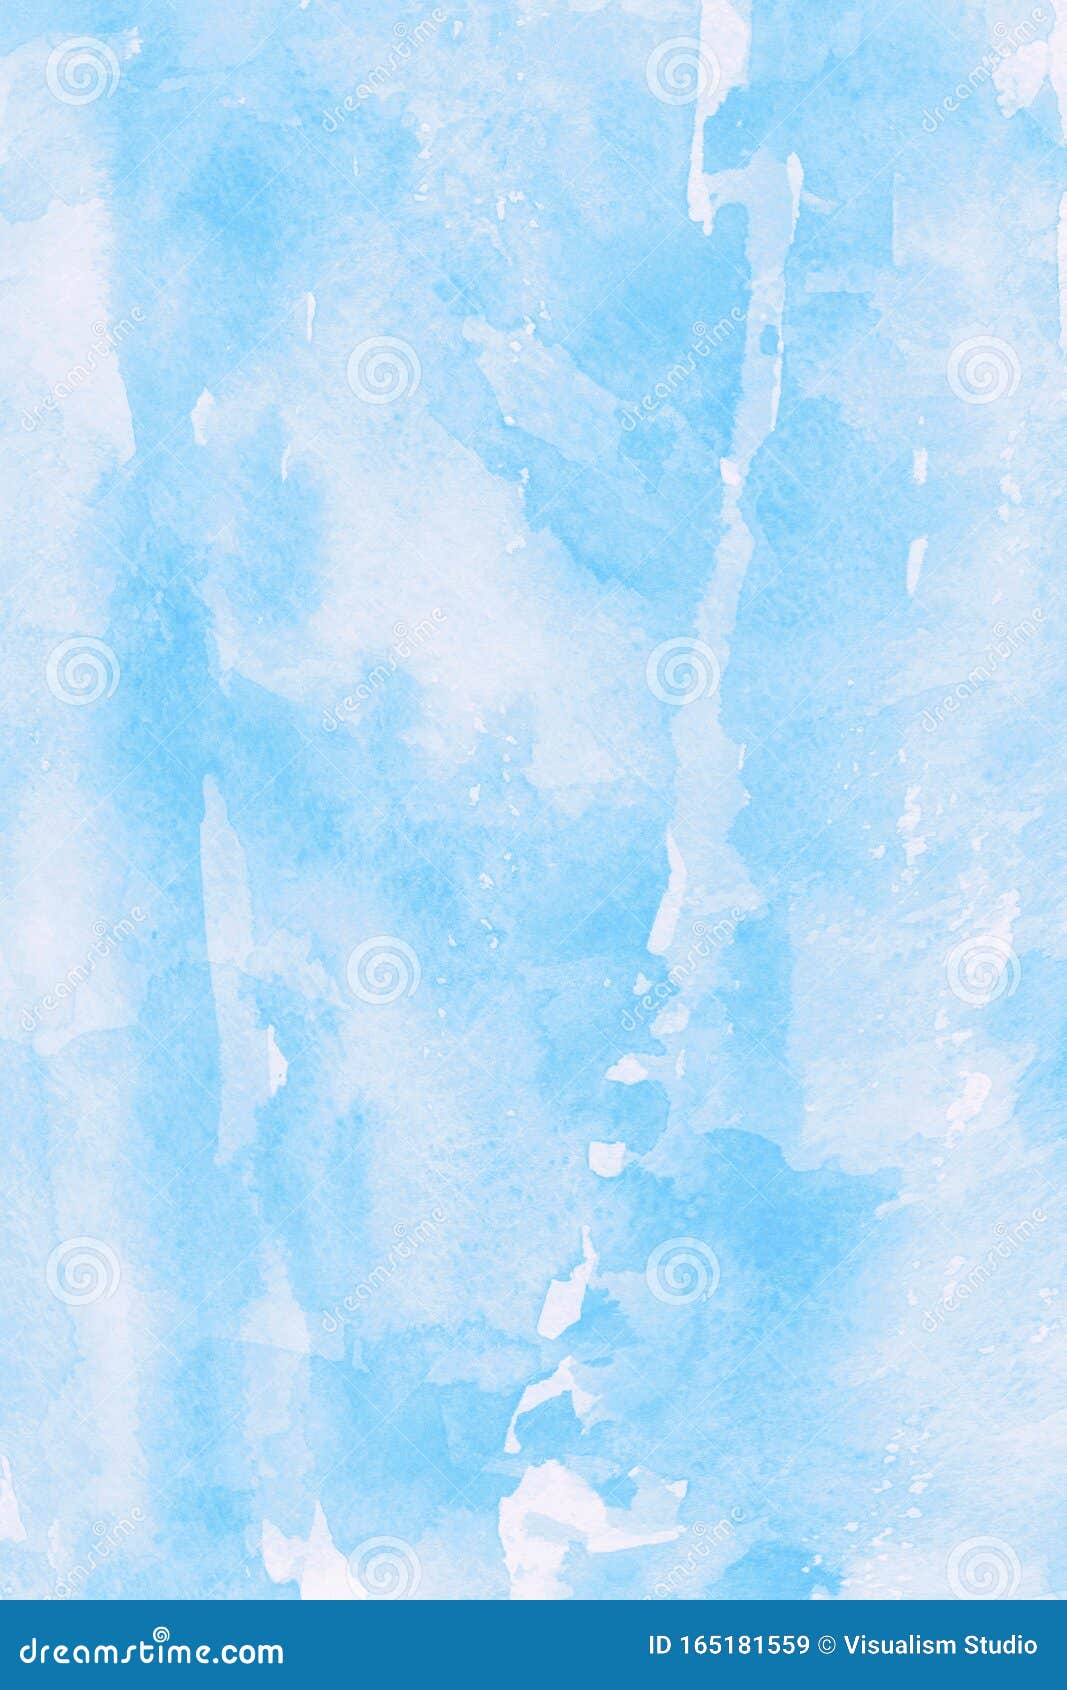 壁纸自然图像淡蓝色白色抽象纹理水色背景图库存例证 插画包括有壁纸自然图像淡蓝色白色抽象纹理水色背景图